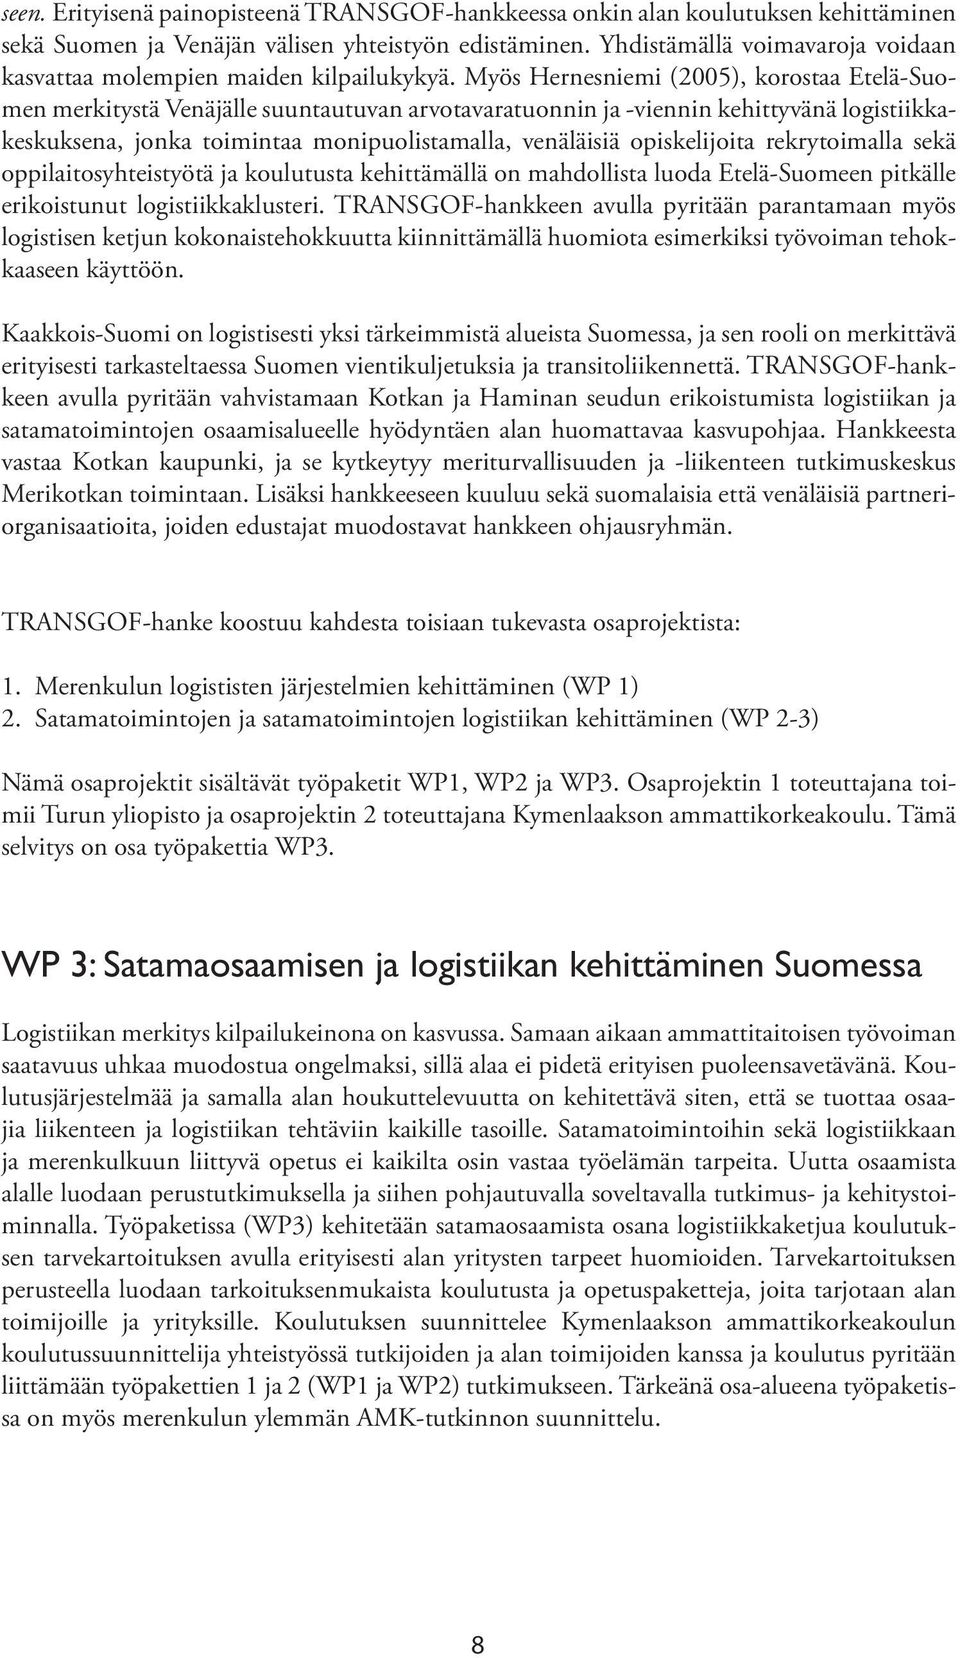 Myös Hernesniemi (2005), korostaa Etelä-Suomen merkitystä Venäjälle suuntautuvan arvotavaratuonnin ja -viennin kehittyvänä logistiikkakes kuksena, jonka toimintaa monipuolistamalla, venäläisiä